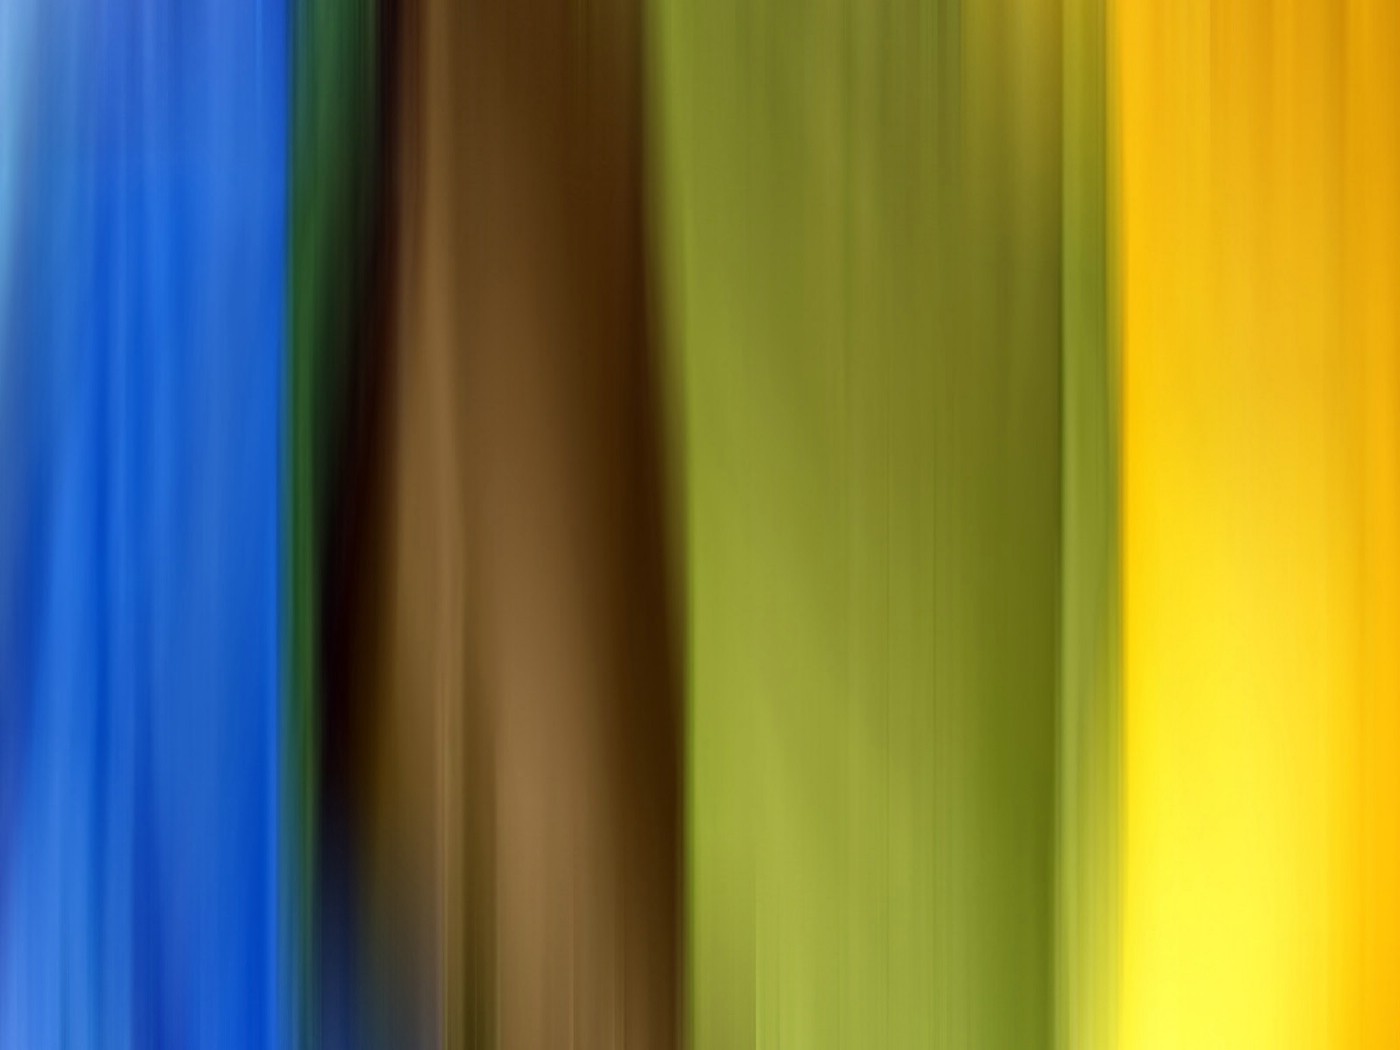 壁纸1400x1050 Abstact Colours 抽象色彩背景图片壁纸壁纸 抽象色彩视觉设计壁纸(第十二辑)壁纸 抽象色彩视觉设计壁纸(第十二辑)图片 抽象色彩视觉设计壁纸(第十二辑)素材 插画壁纸 插画图库 插画图片素材桌面壁纸